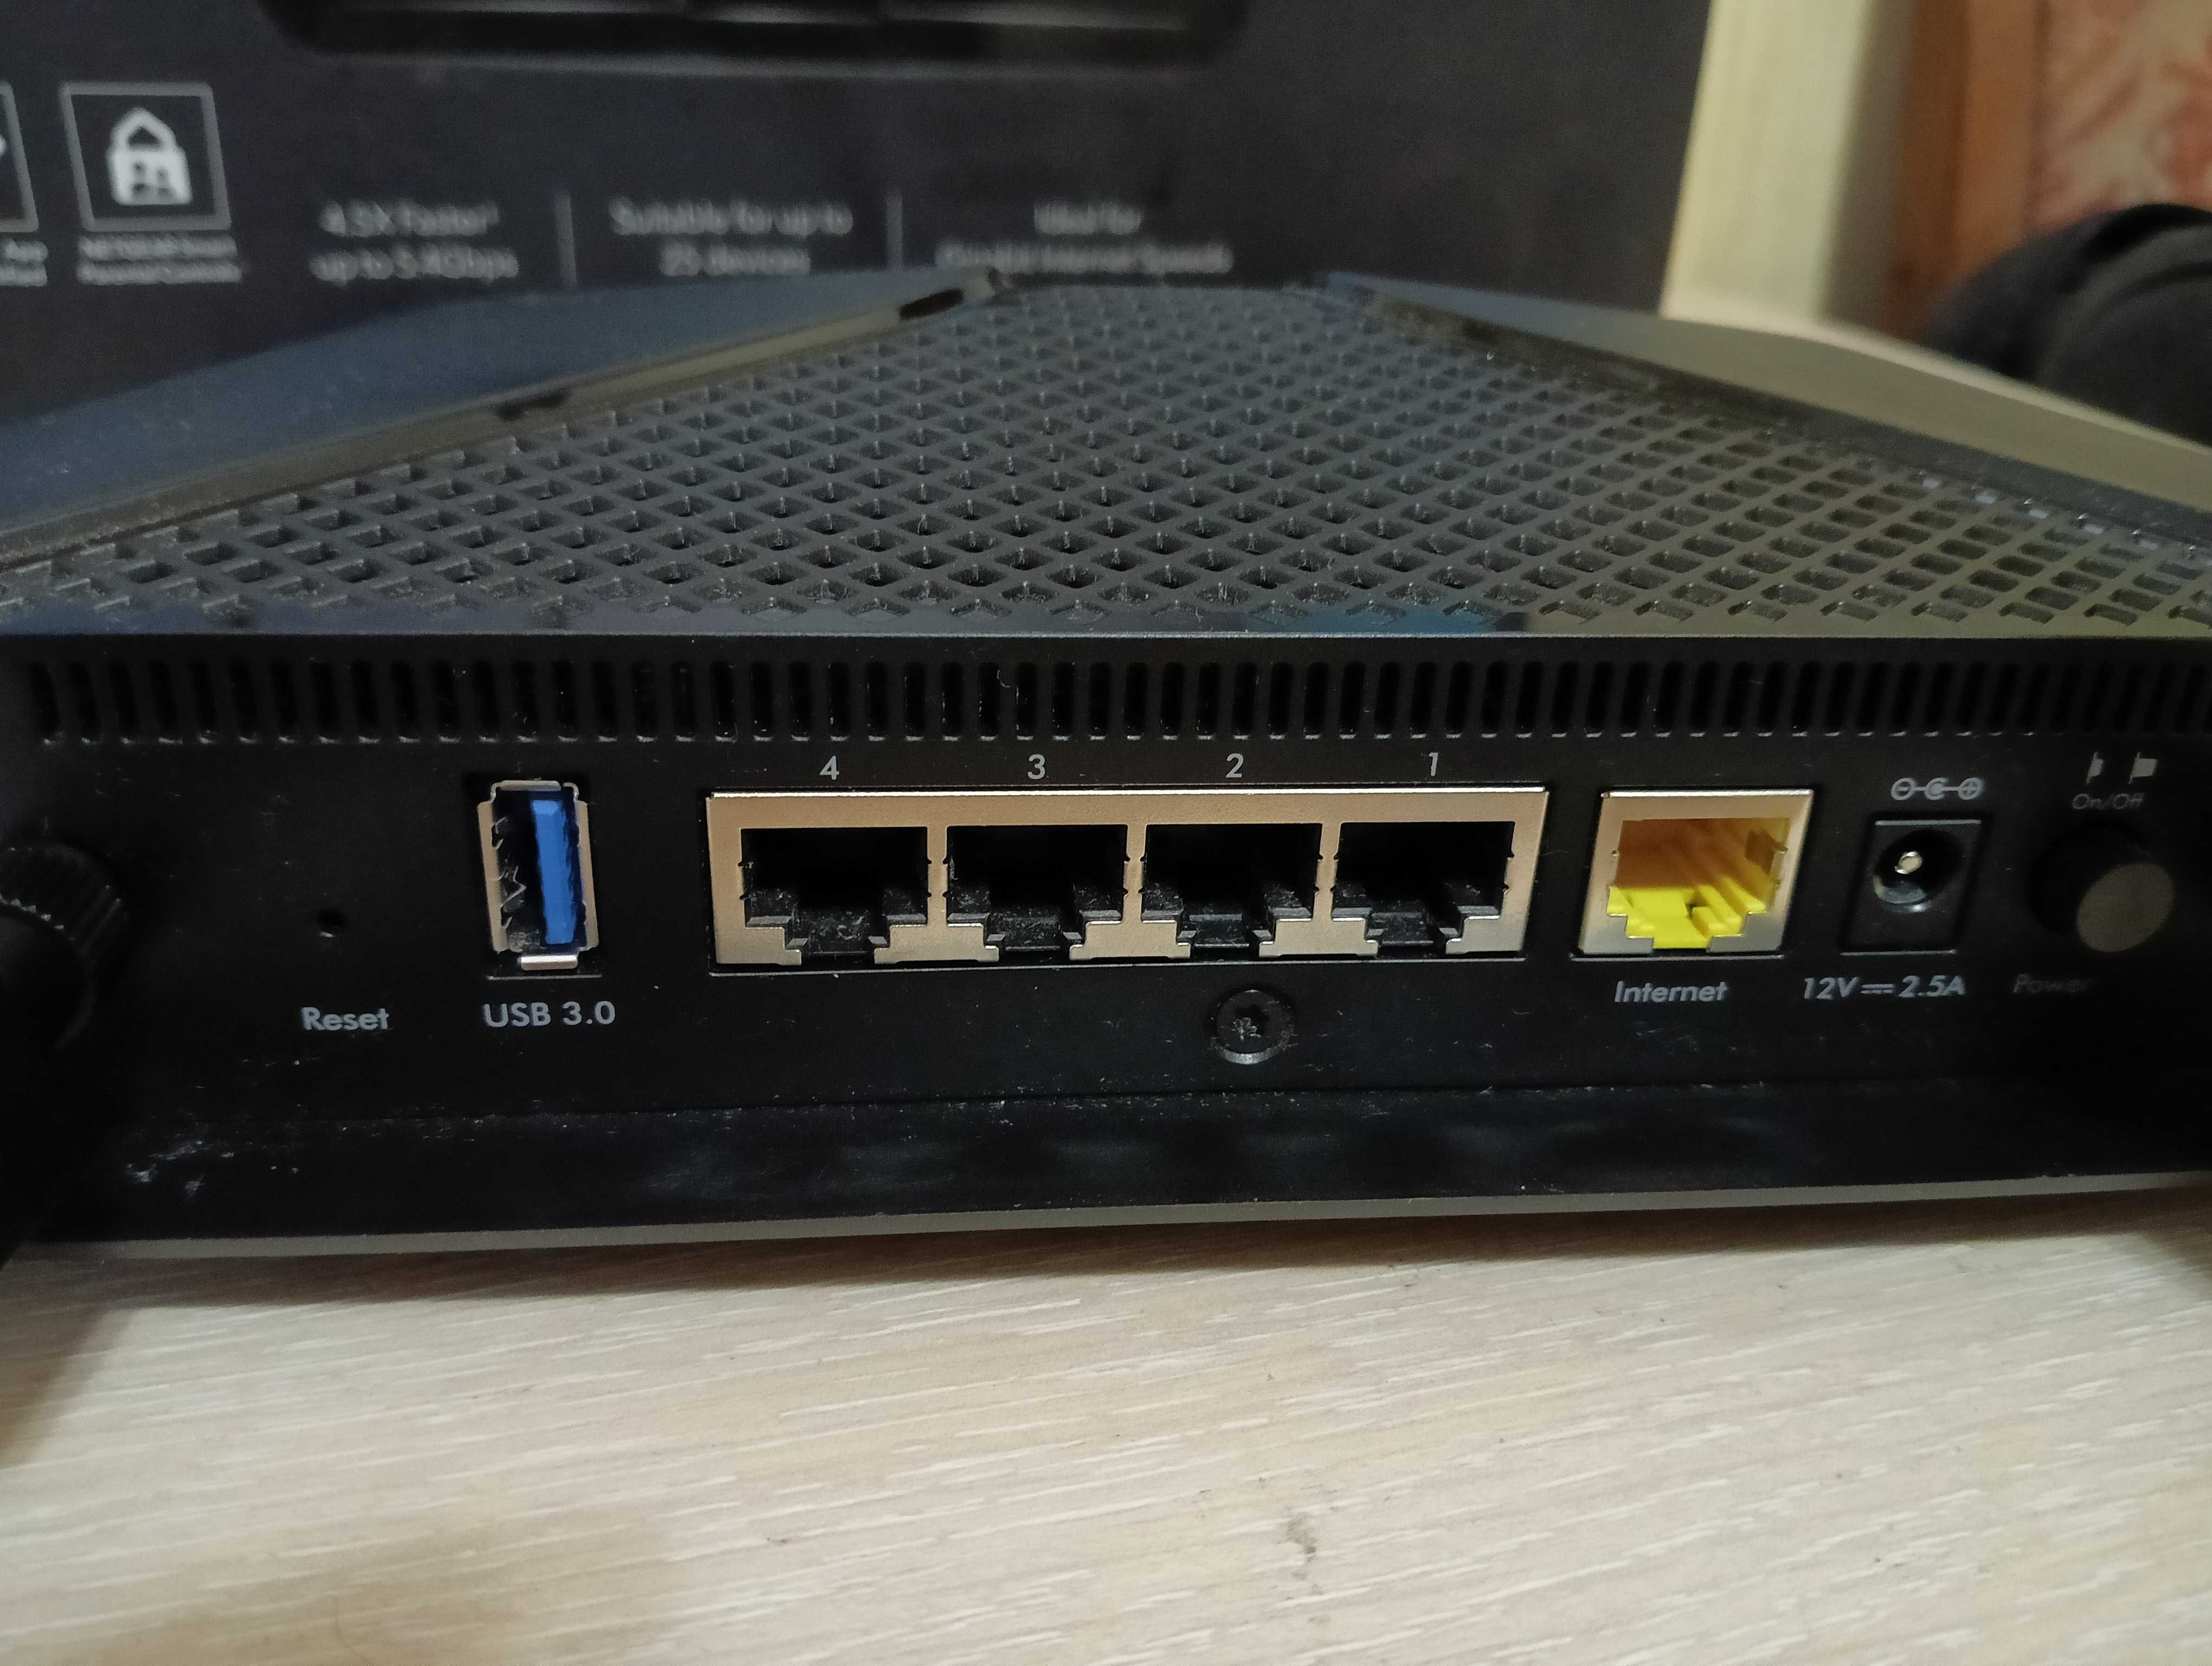 Netgear AX5400 (RAX50) 6 Stream WiFi 6 5400 Мбит/с